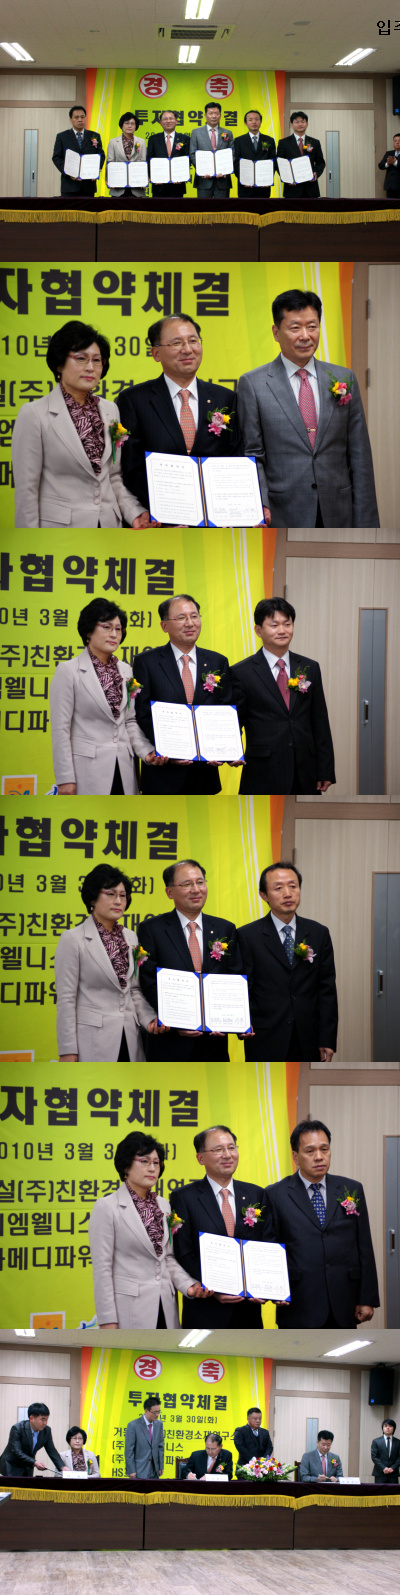 2010년 3월 30일 나노바이오센터 준공식 - 입주협약식